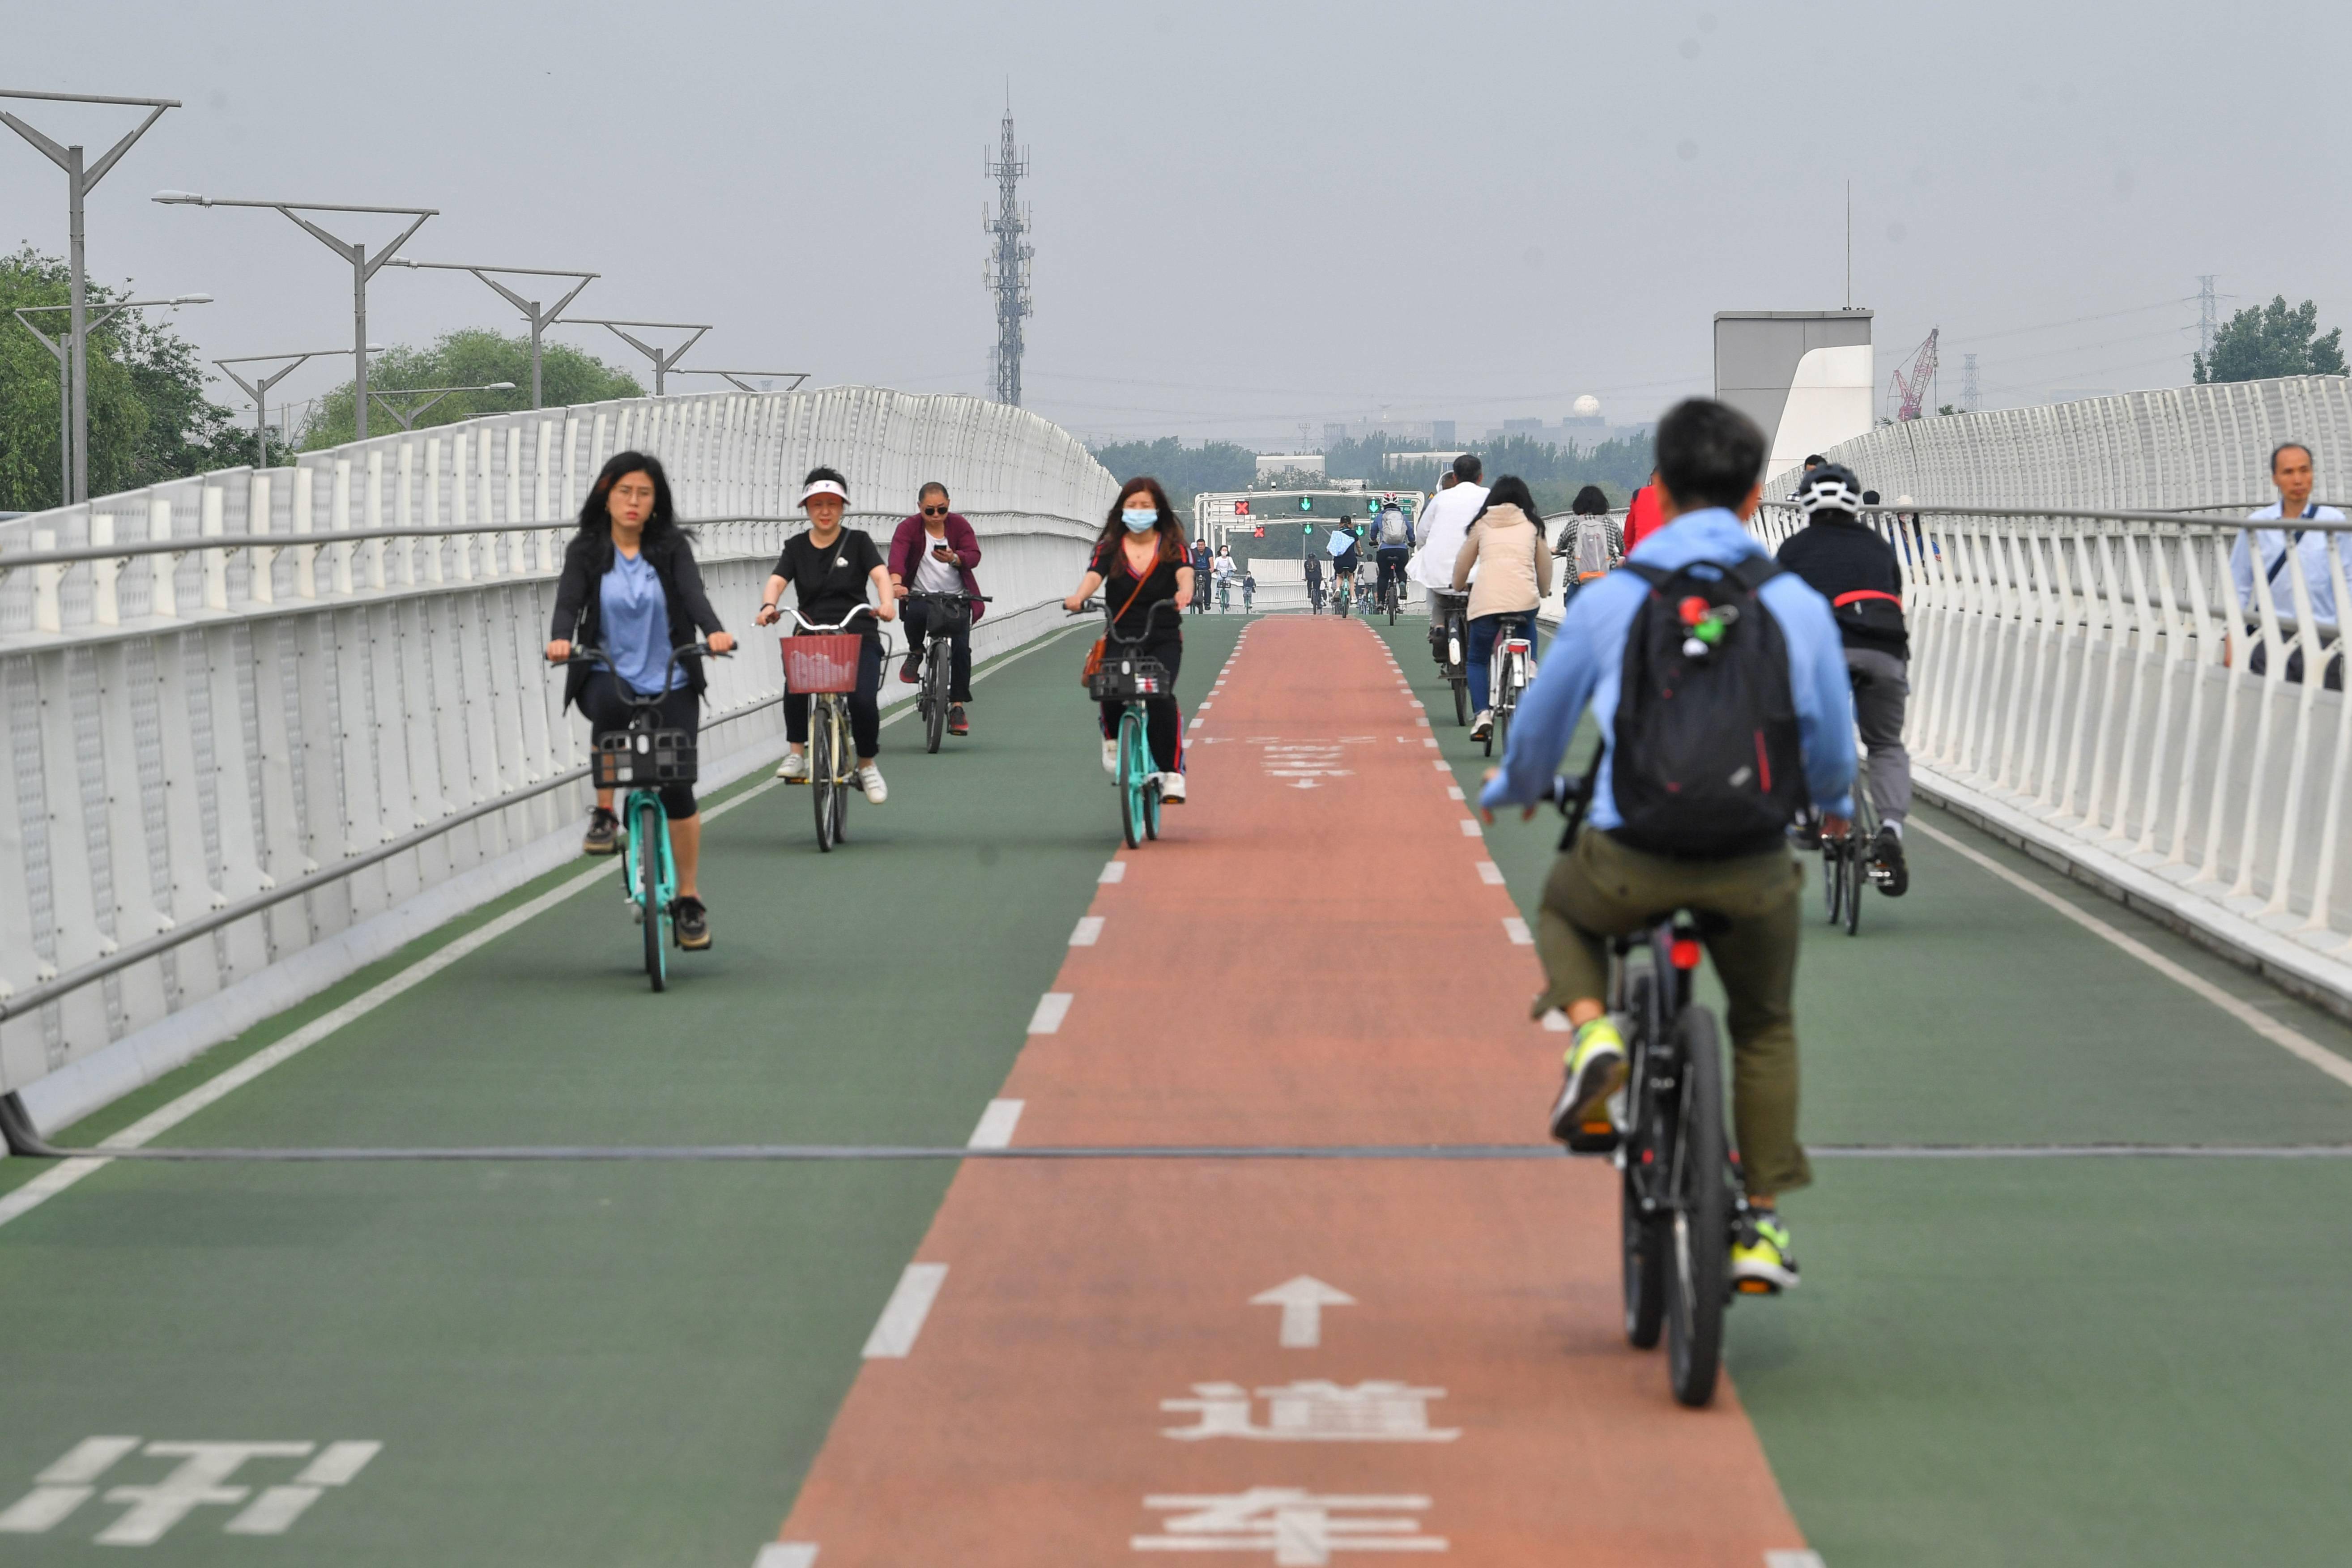 北京首条自行车专用路开通两年,累计通行量超318万人次